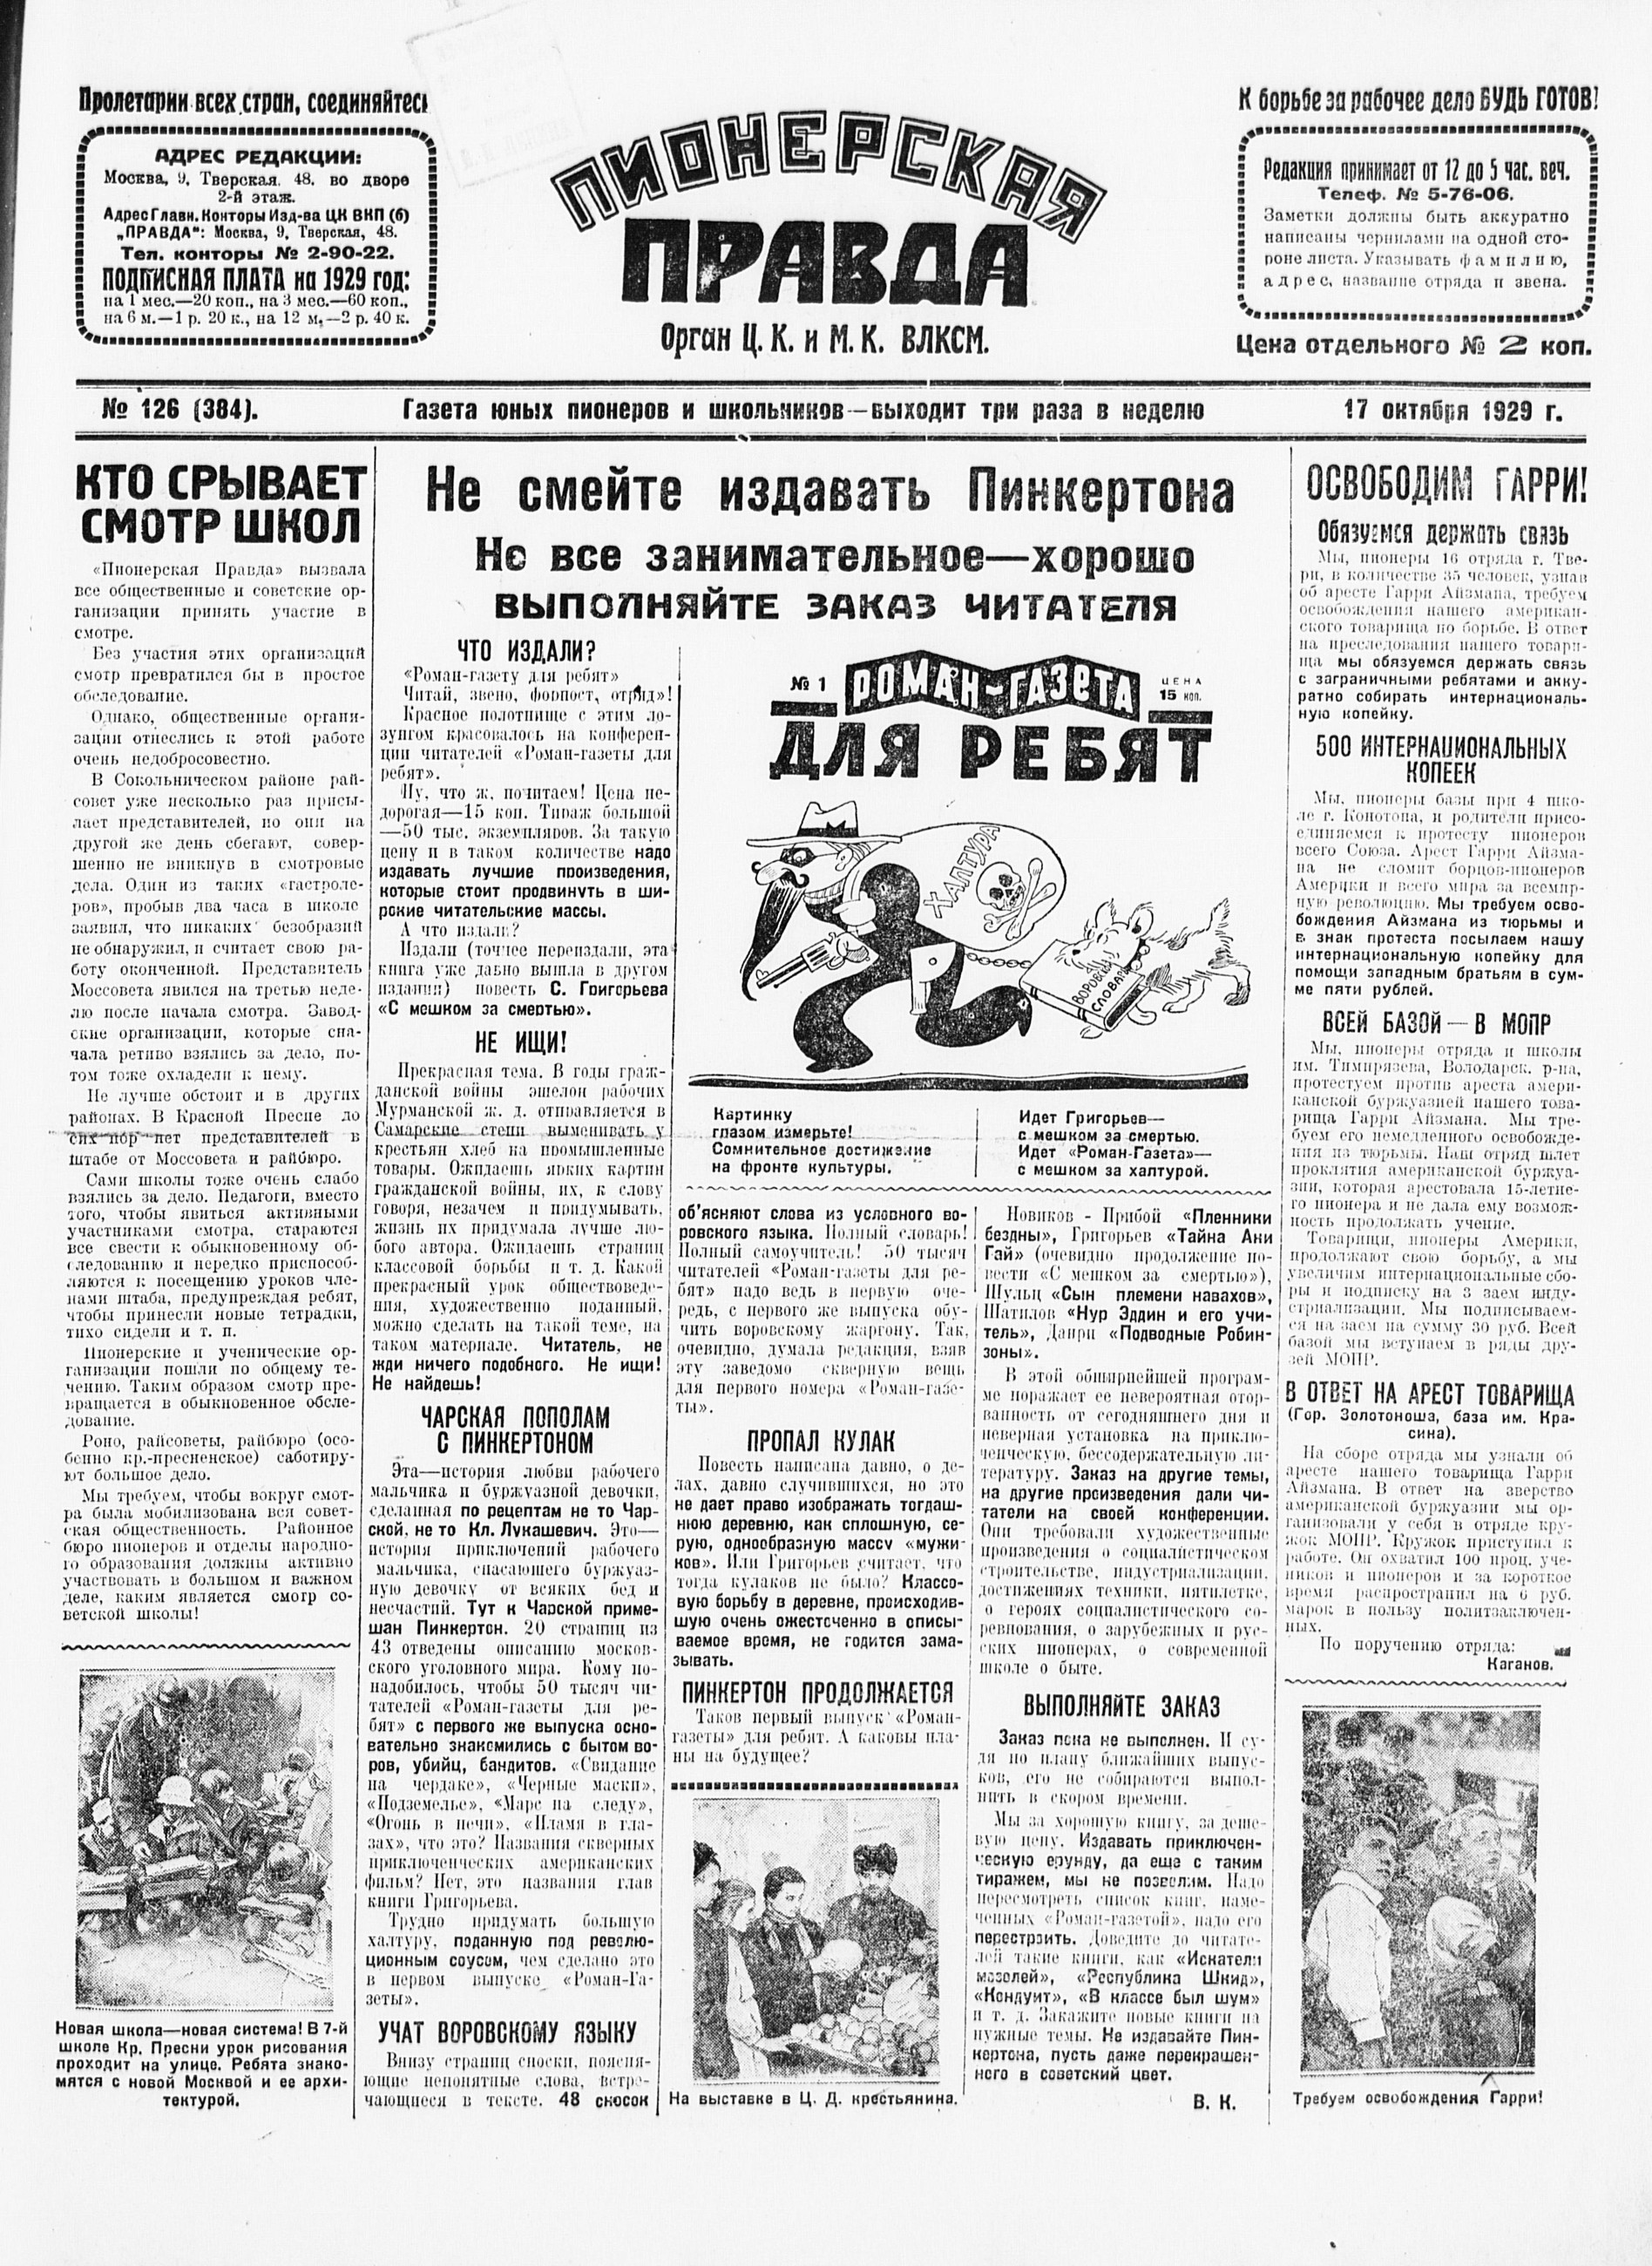 Пионерская правда. 1929. № 126 (384): Газета юных пионеров и школьников - выходит три раза в неделю - 1929